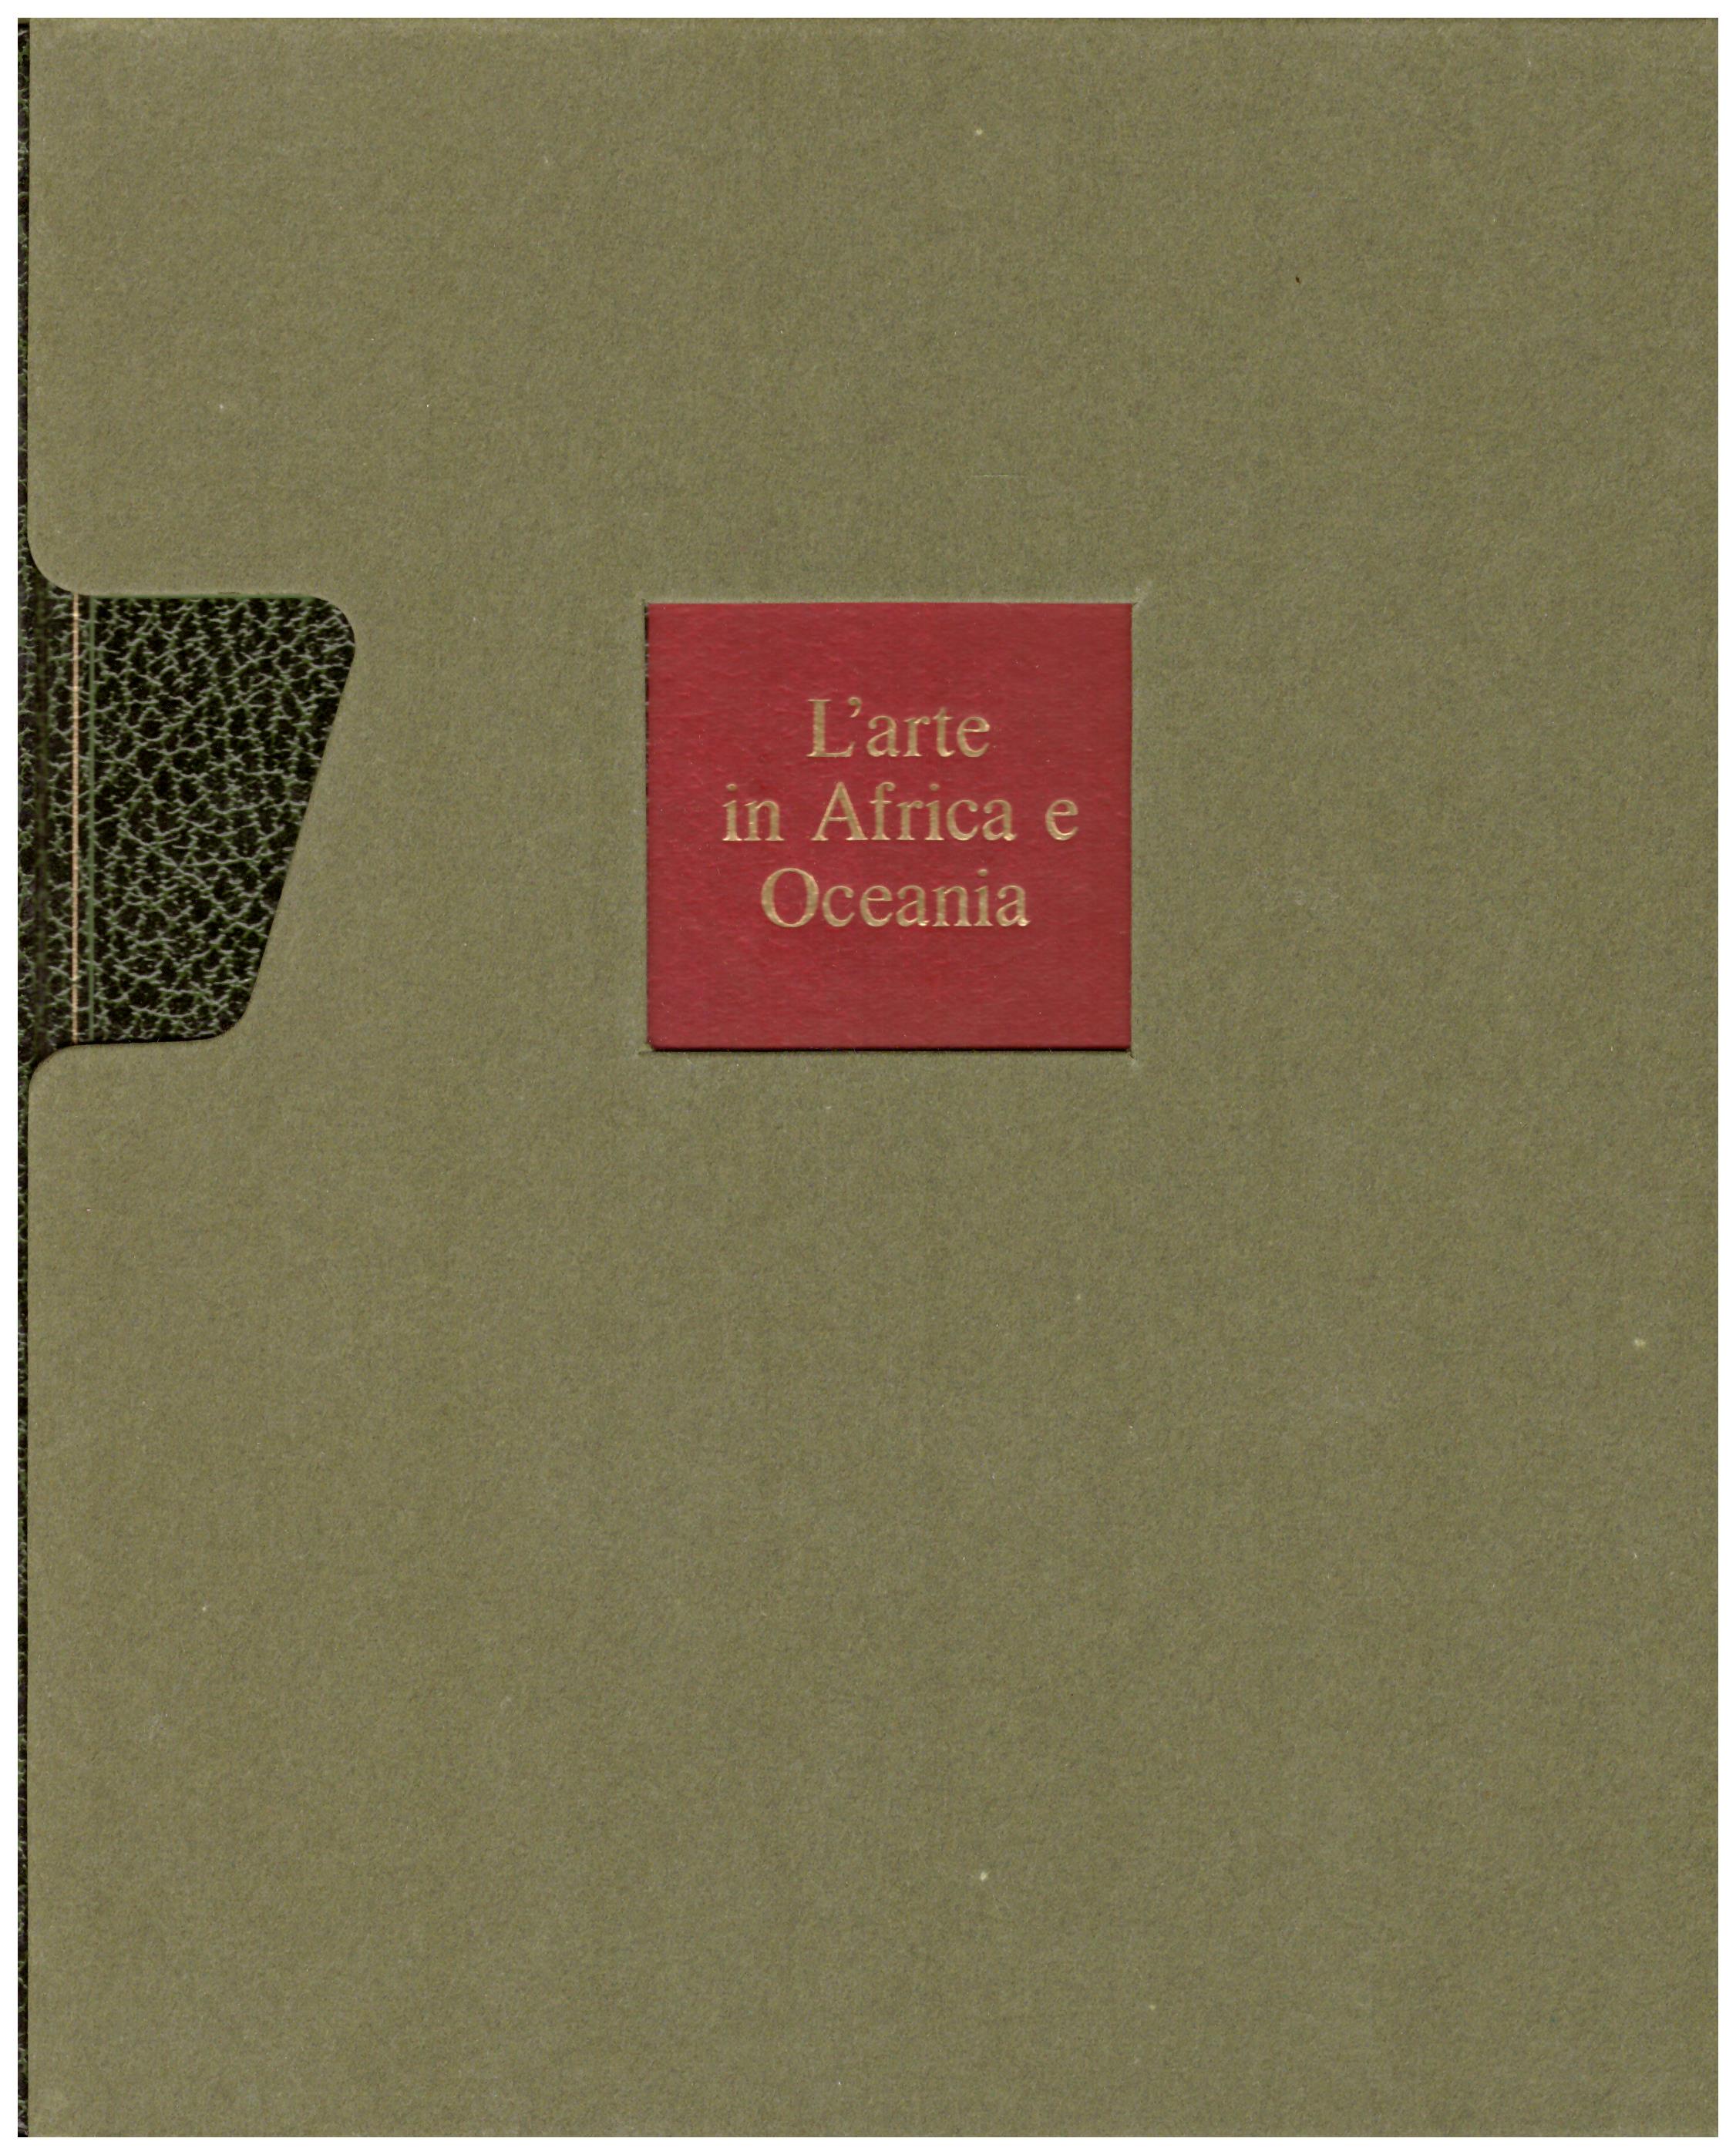 Titolo: L'arte nel mondo n.17 L'arte in Africa e Oceania Autore: Margaret Trowell, Hans Nevermann Editore: Rizzoli, 1970